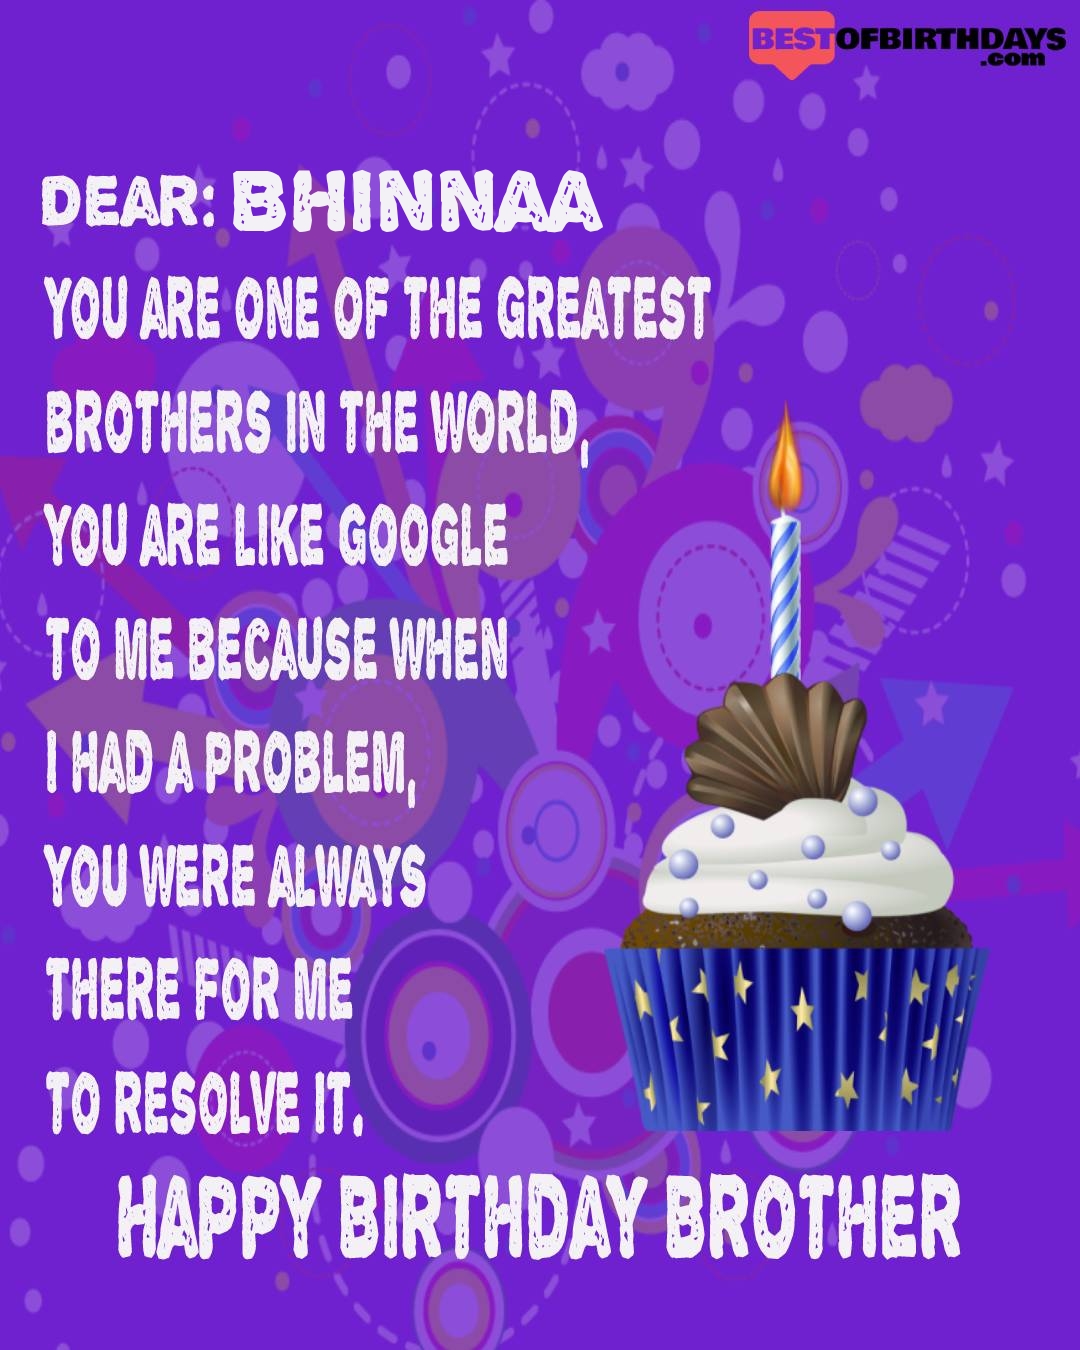 Happy birthday bhinnaa bhai brother bro